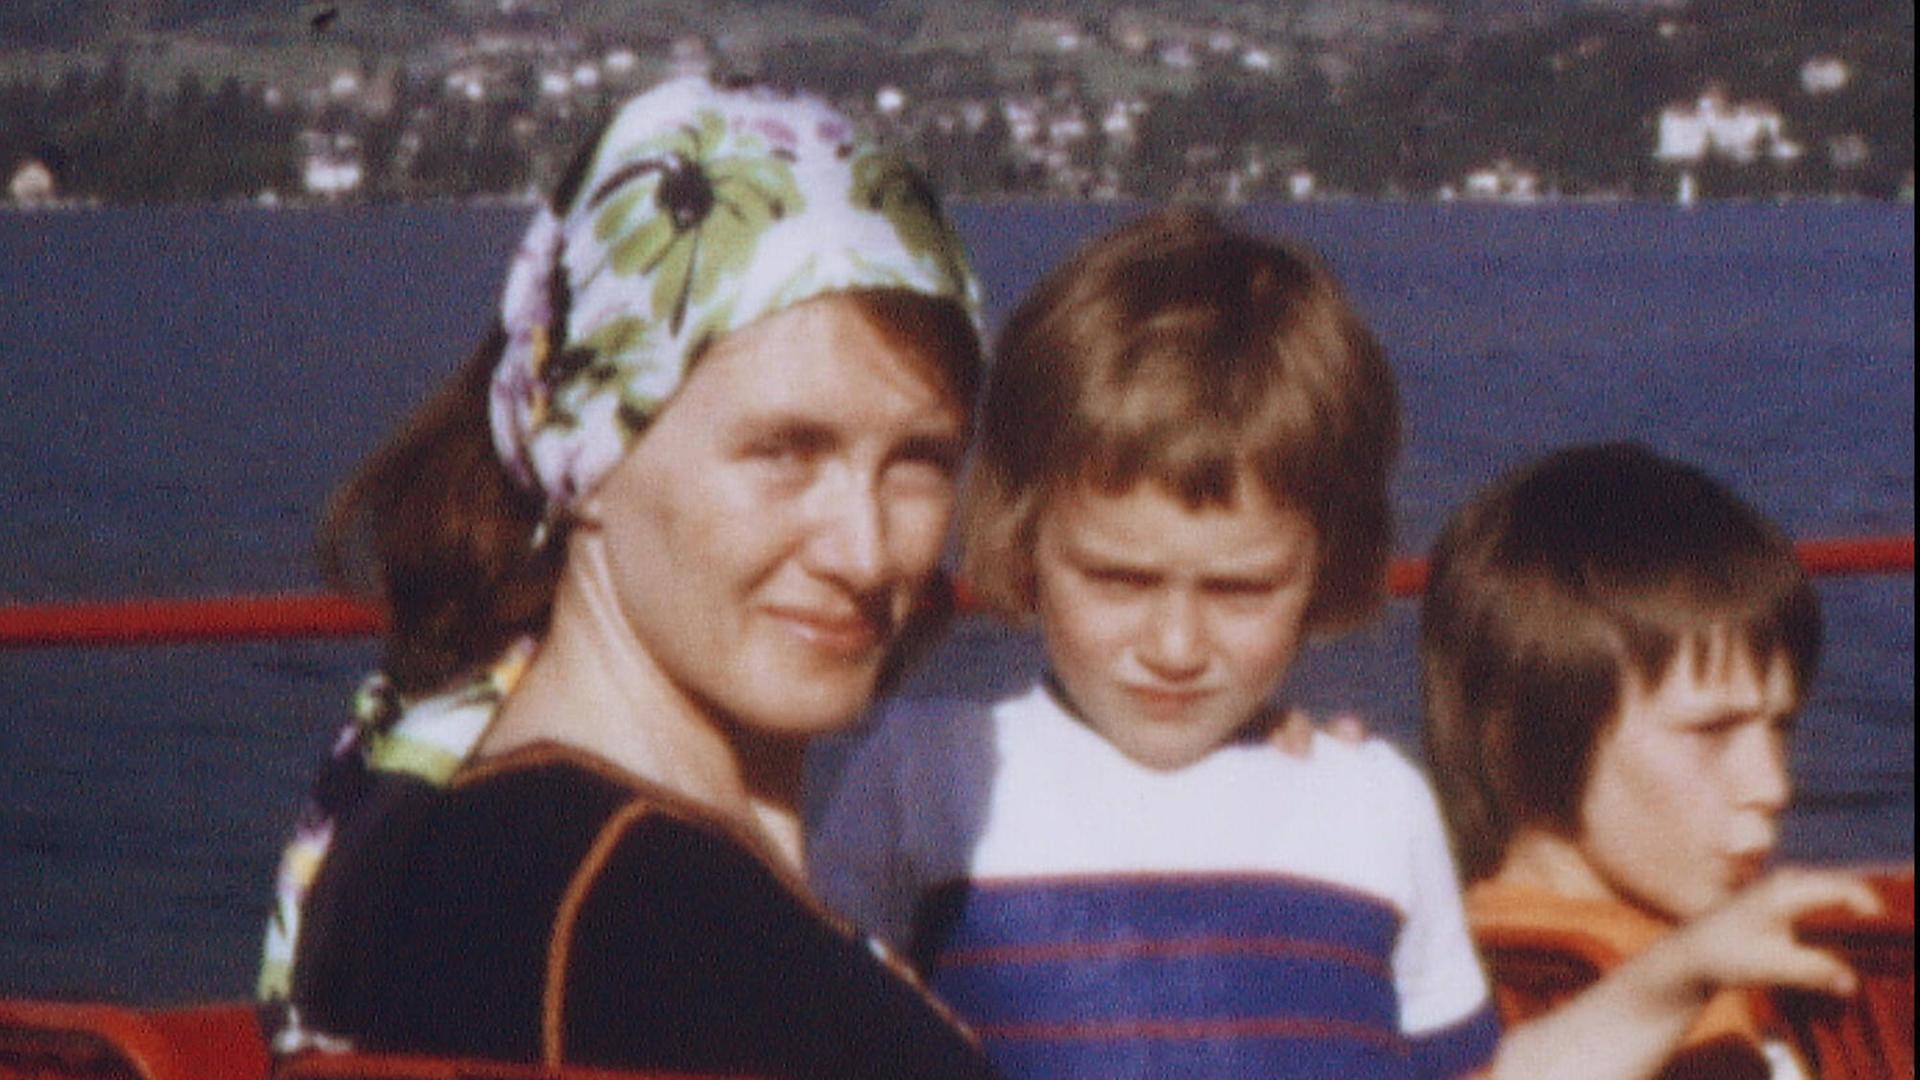 Alte Aufnahme von Annie Ernaux, die als junge Frau ein geblümtes Kopftuch trägt und mit zwei Kindern auf dem Oberdeck eines Ausflugsdampfers sitzt.